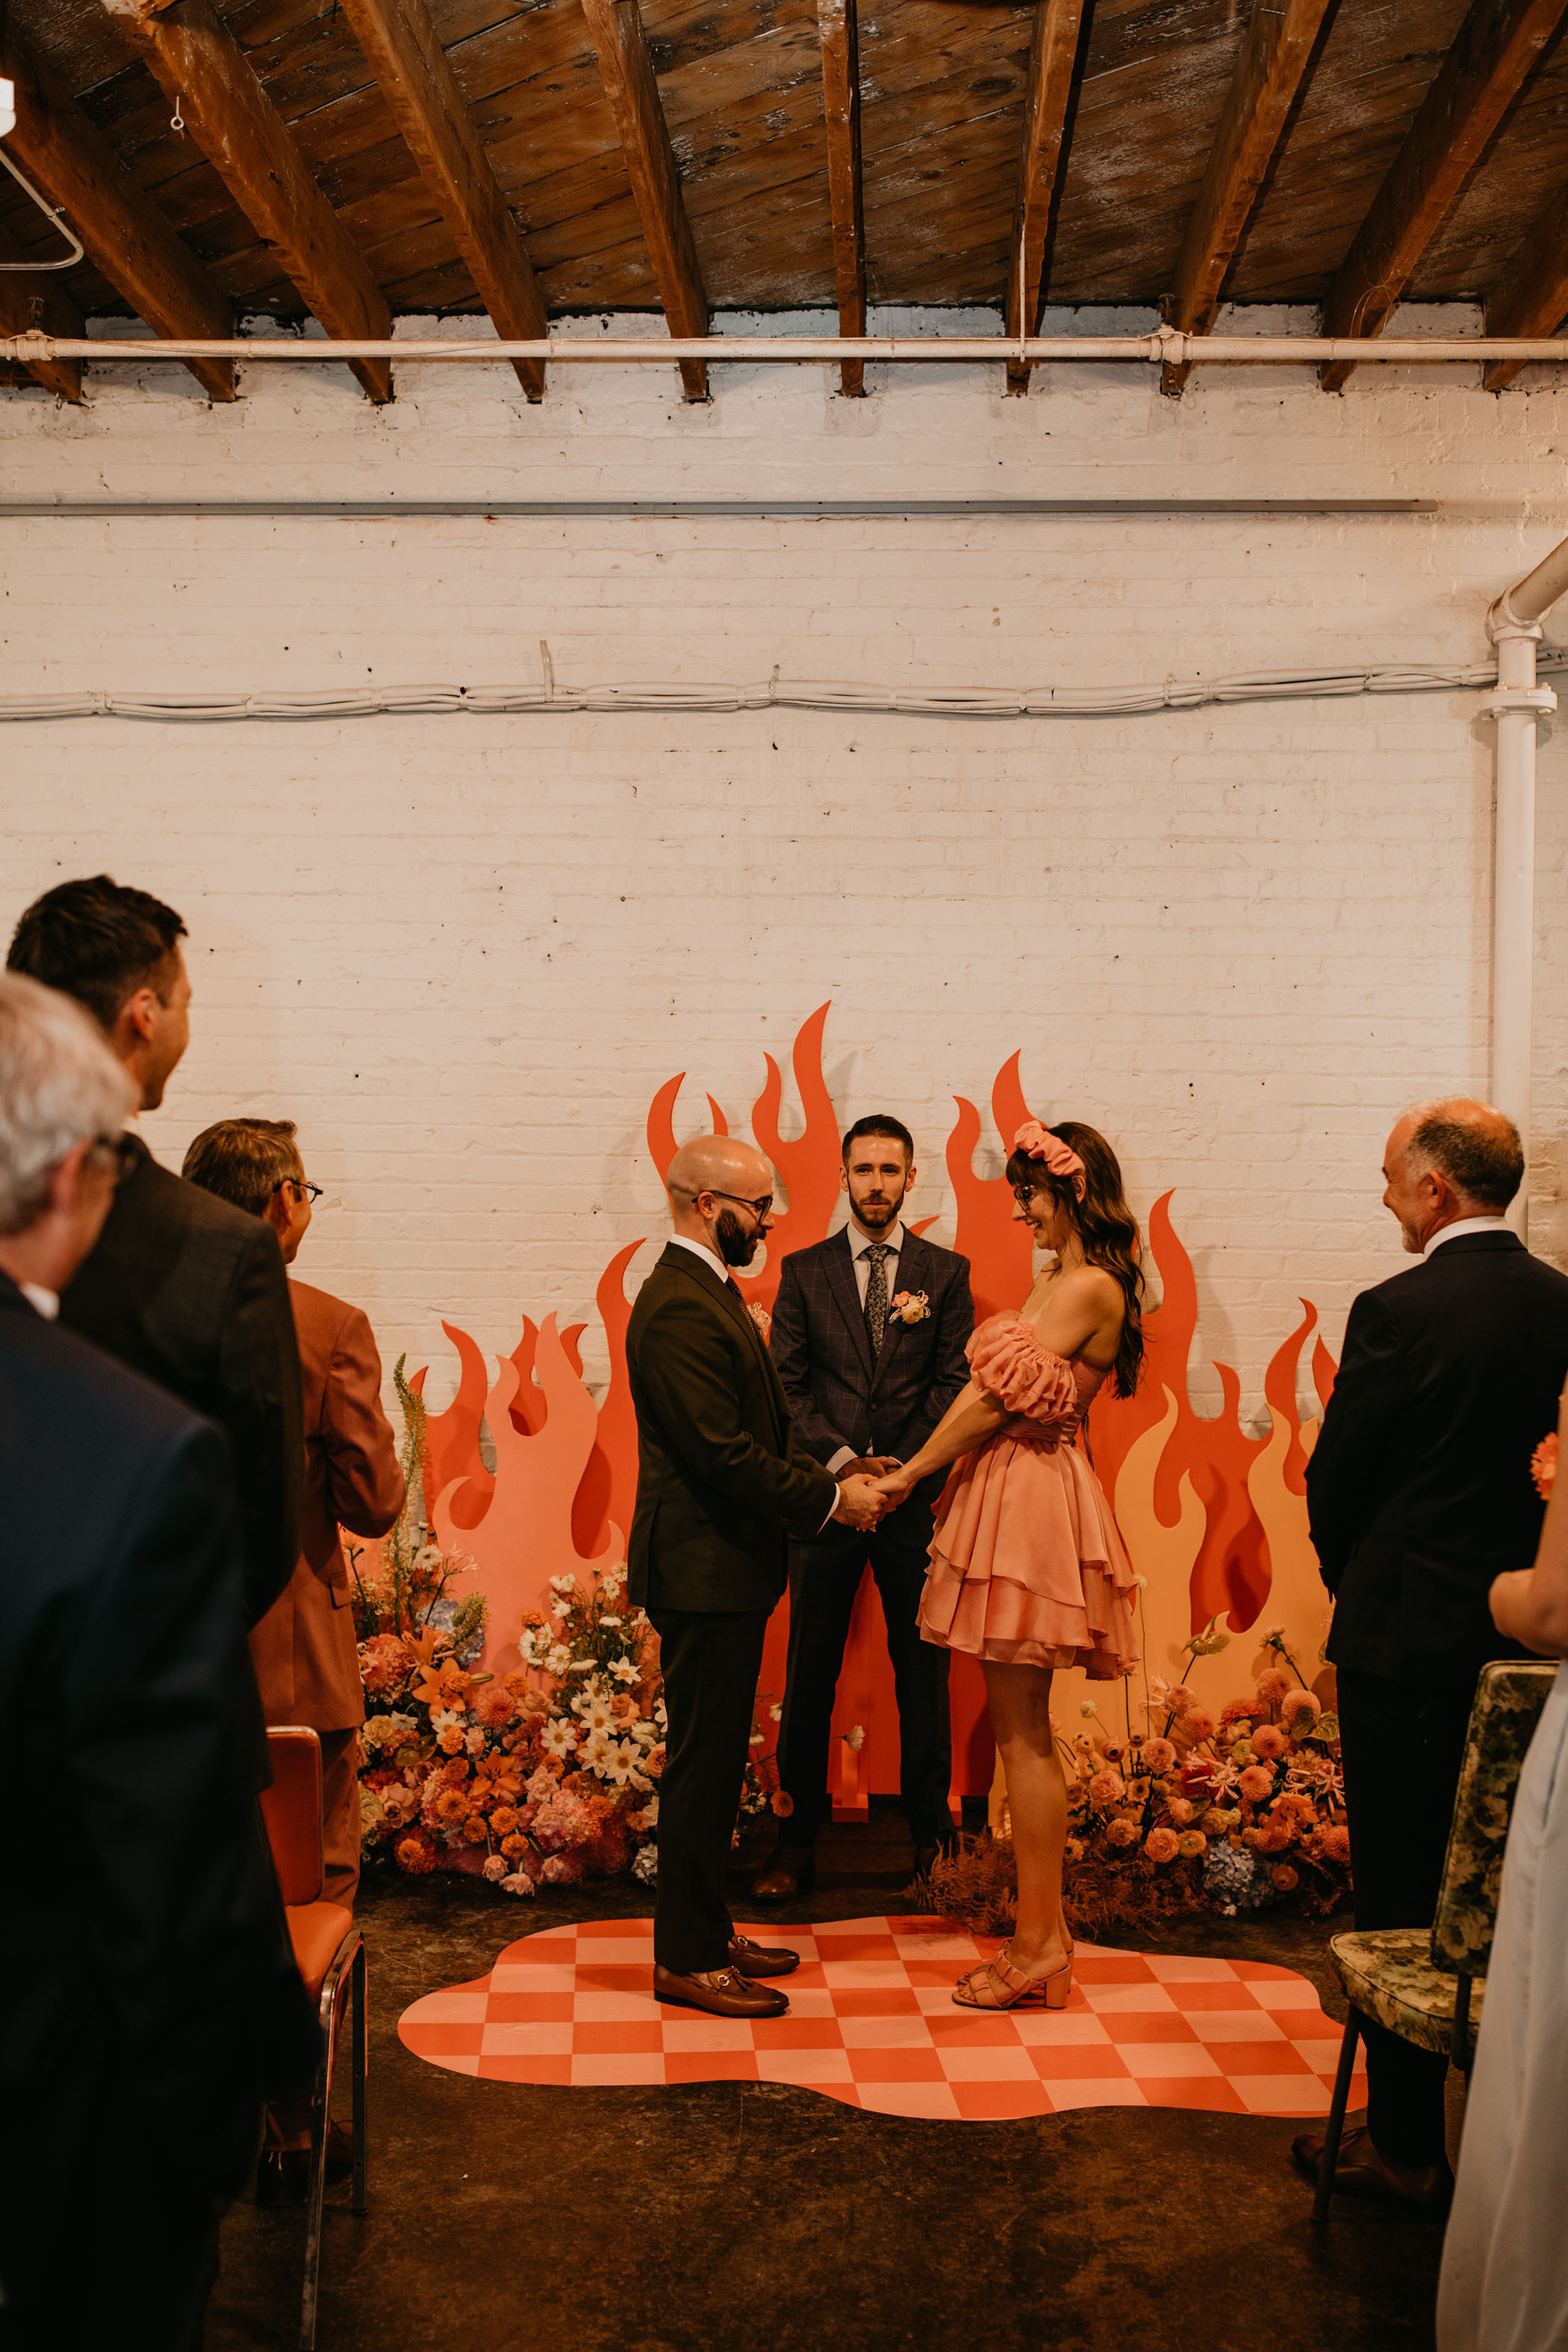 Pee Wee's Playhouse Meets Guy Fieri, But Make It Wedding.